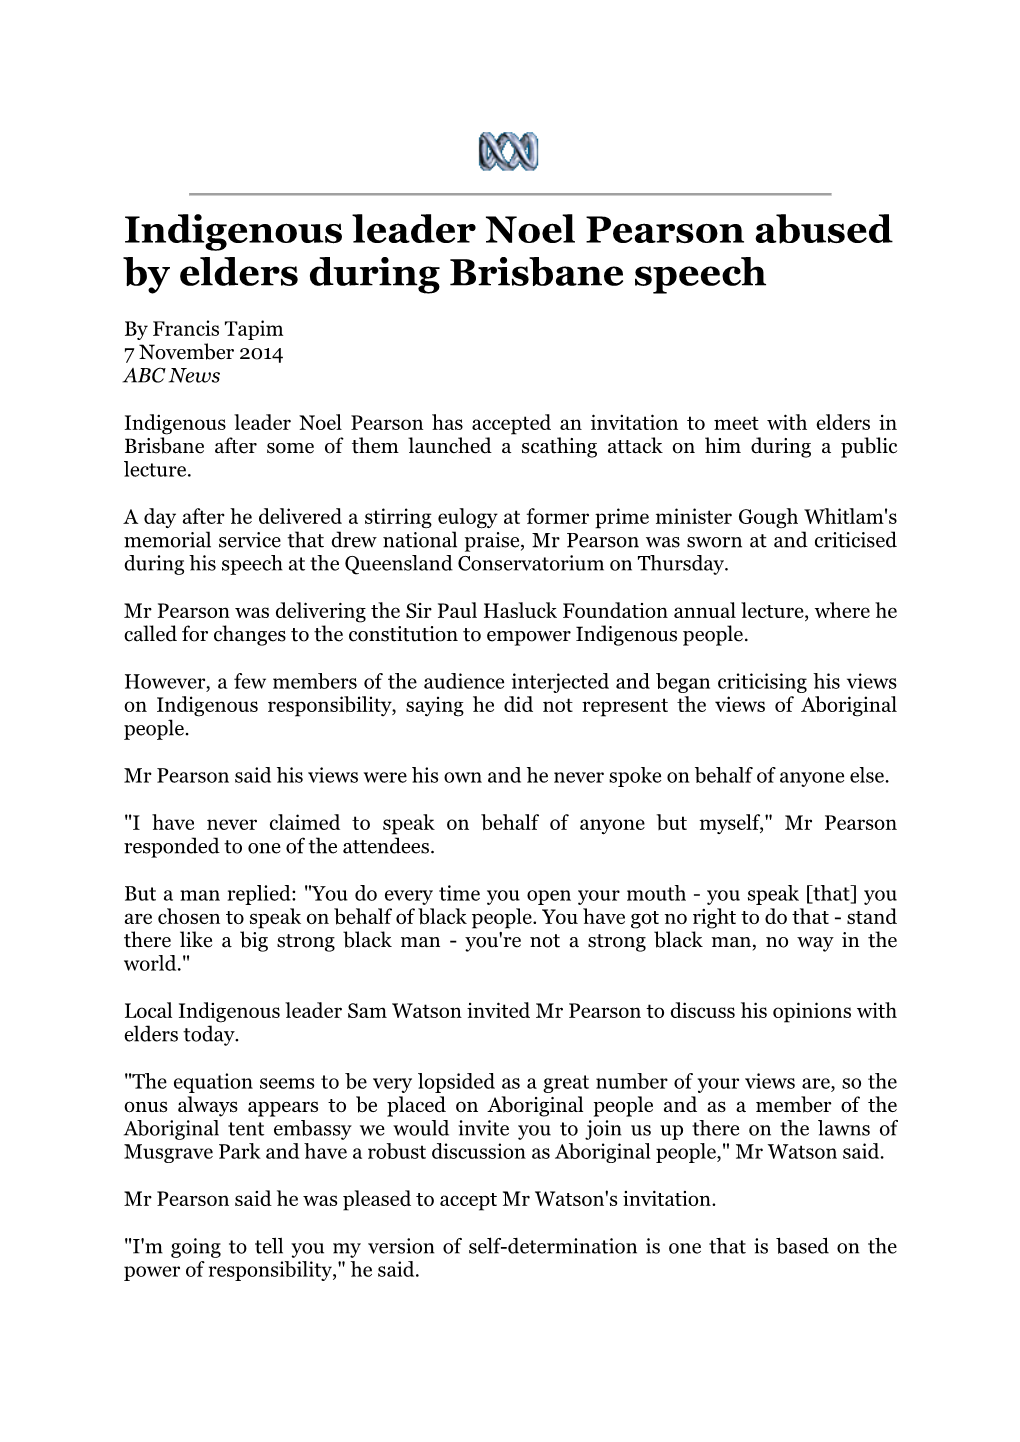 Indigenous Leader Noel Pearson Abused by Elders During Brisbane Speech